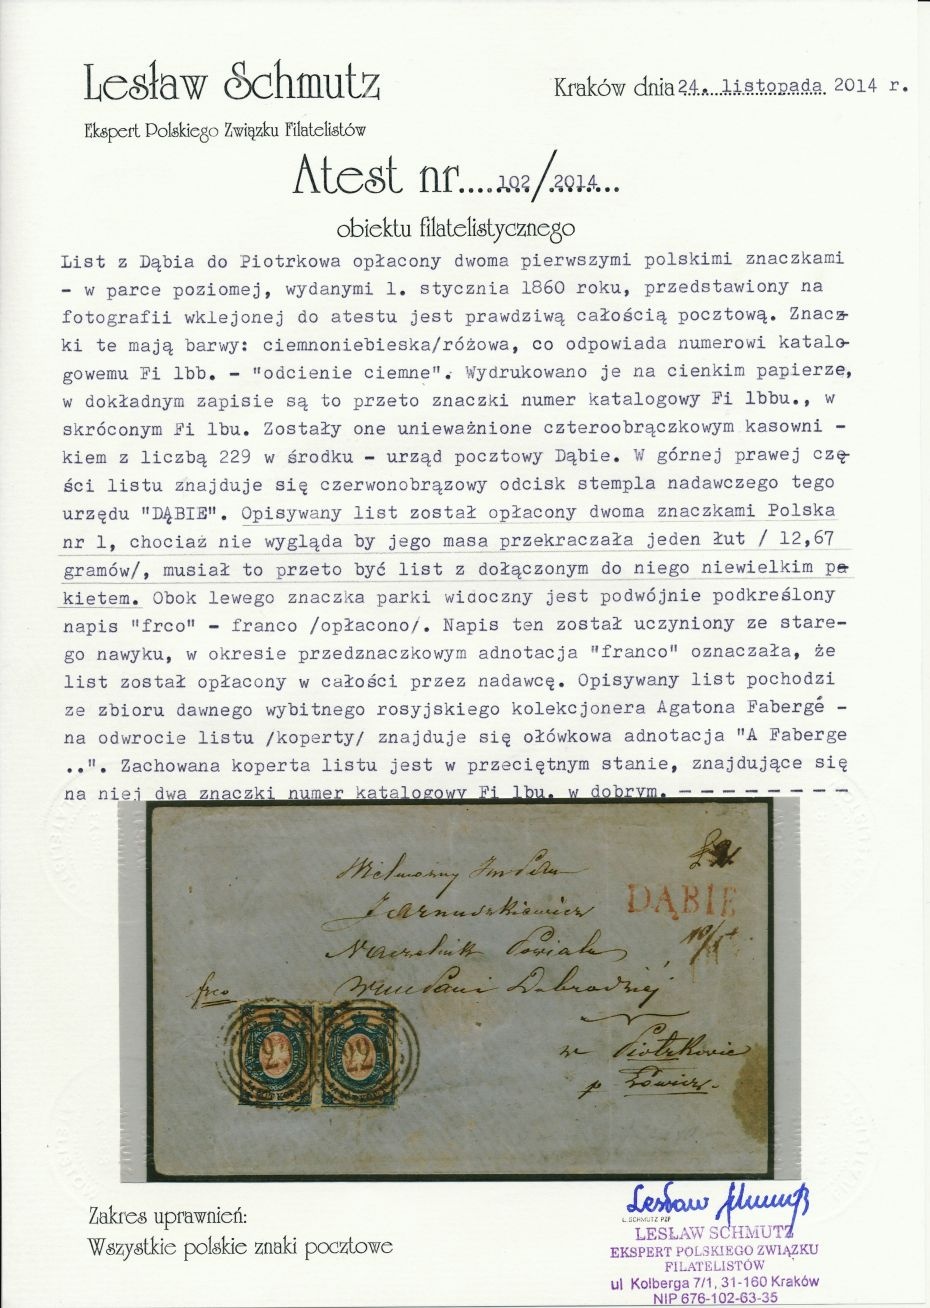 229 - Dąbie (265) 1bbu atest koperty dwułutowego listu do Piotrkowa Tryb., parka znaczków, pkt.6B